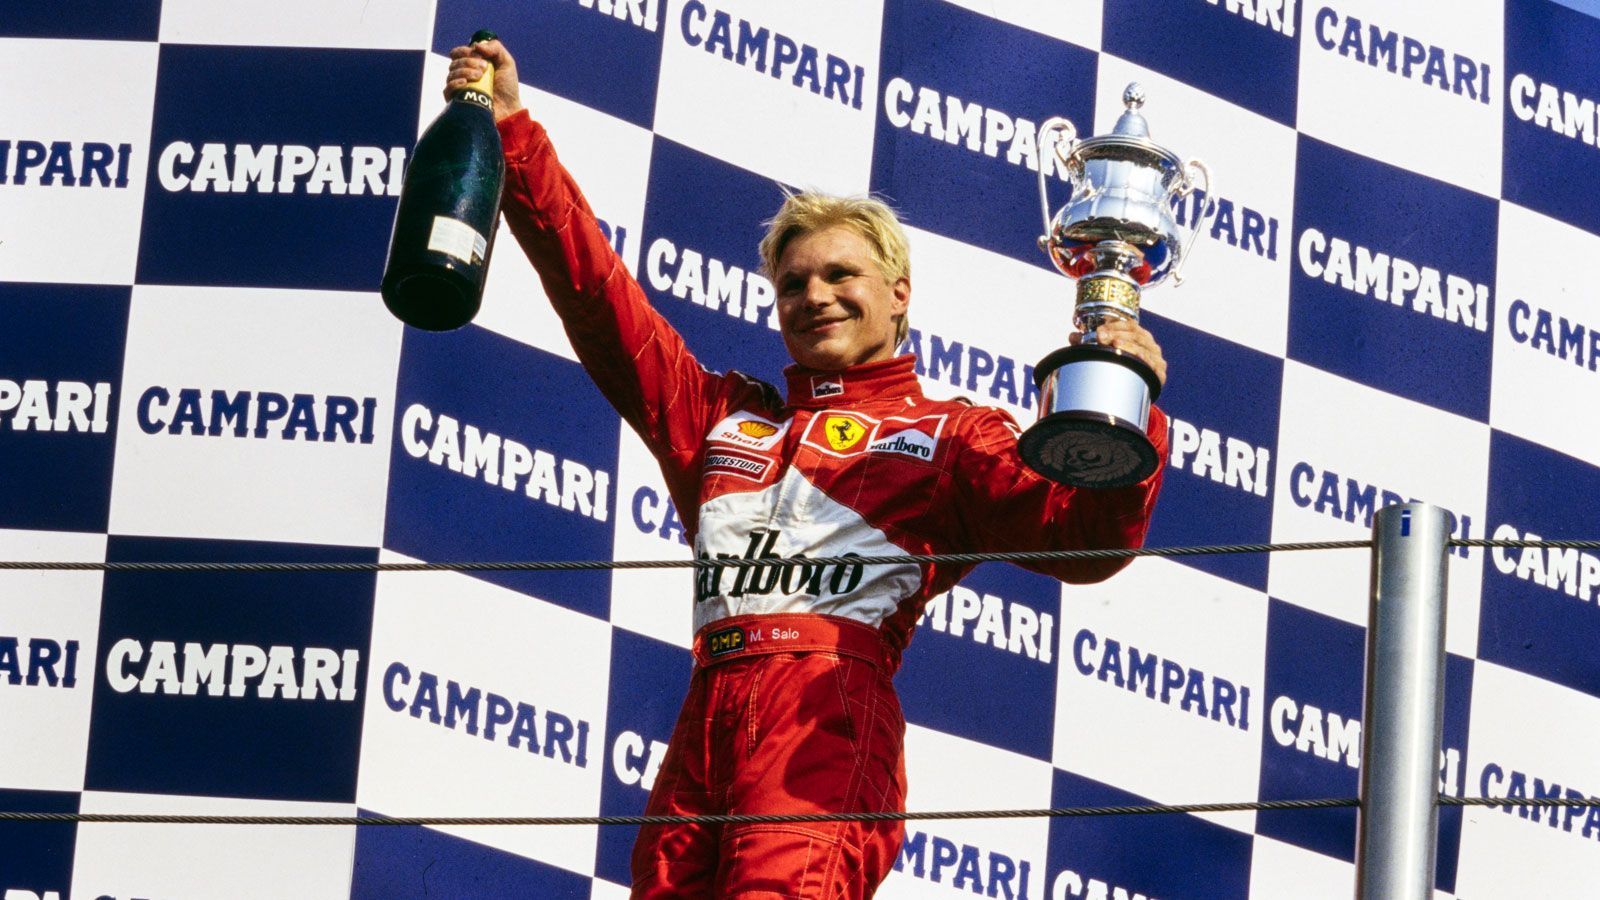 
                <strong>Mika Salo (Ferrari) - 1999</strong><br>
                Der Finne ersetzt Michael Schumacher nach seinem schweren Unfall in Silverstone und absolviert 1999 sechs Rennen für die Scuderia. Trotz des enormen Drucks beim italienischen Rennstall weiß Salo von sich zu überzeugen, am Hockenheimring fährt der Finne auf Rang zwei und auch beim Ferrari-Heimspiel in Monza darf er als Drittplatzierter mit auf das Podest. Obwohl Salo für die Scuderia nur sechs Rennen absolviert, hat er einen großen Anteil am Gewinn der ersten Konstrukteursweltmeisterschaft des Teams seit 1983. Zur Saison 2000 wird Salo vom Sauber-Team verpflichtet, 2002 beendet der blonde Finne schließlich seine Formel 1-Karriere beim Toyota-Team.
              